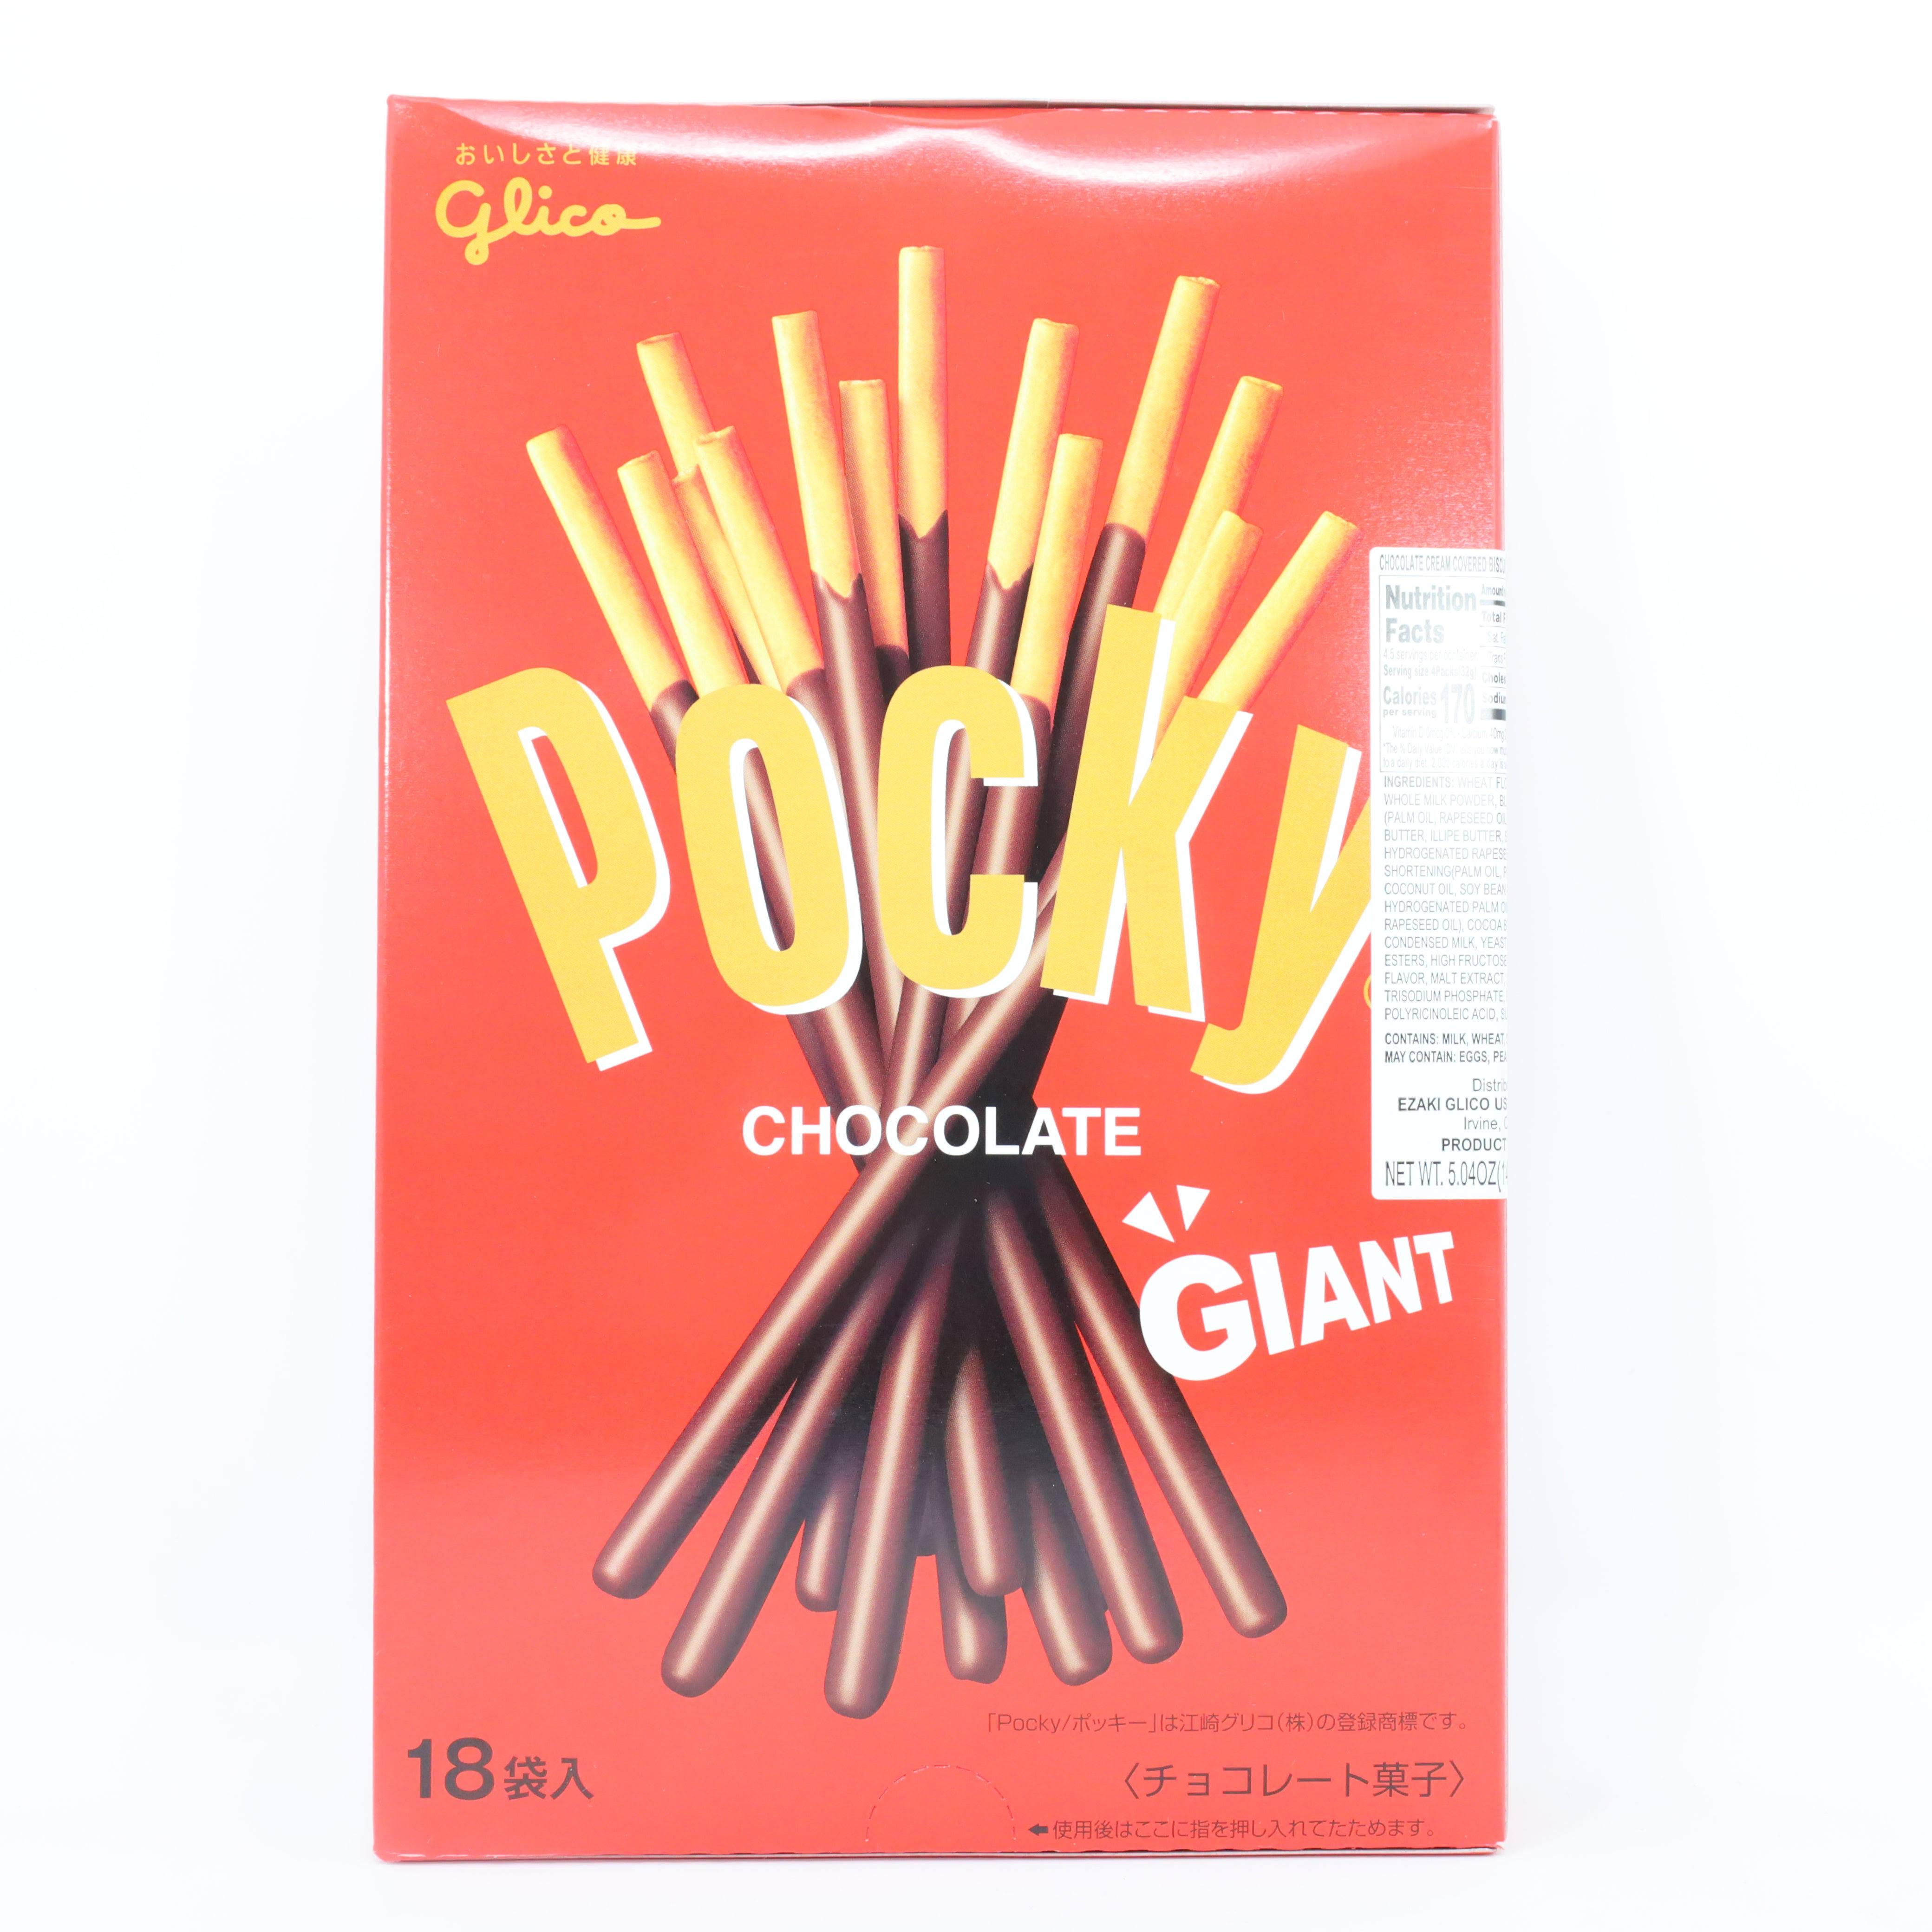 Glico Pocky Giant Chocolate Stick - 143g